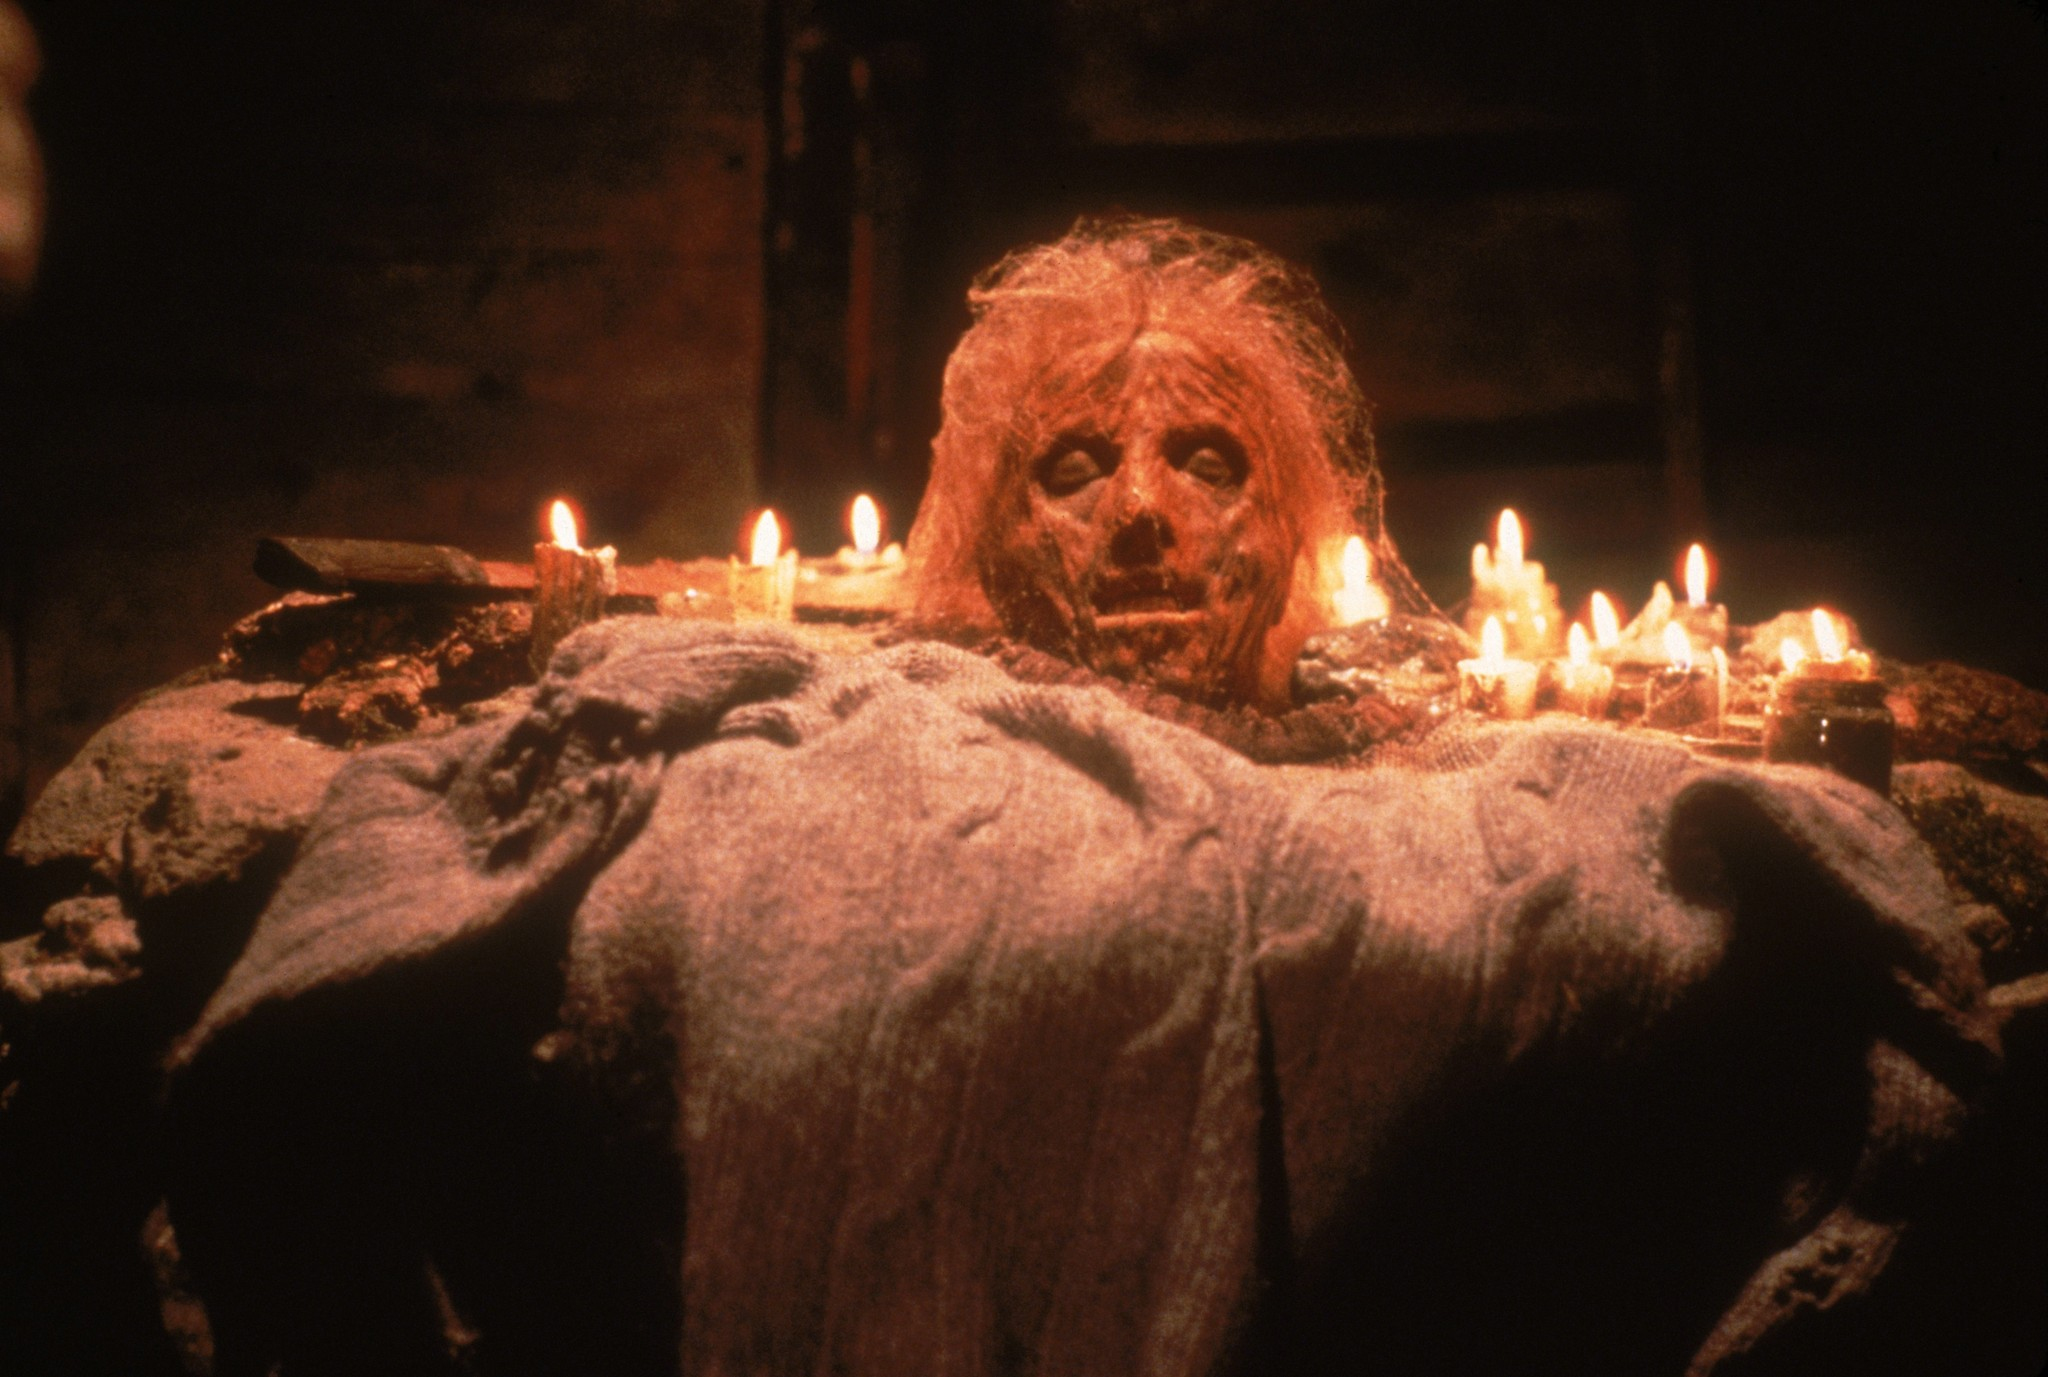 Xem Phim Thứ 6 Ngày 13 (Phần 2), Friday The 13th Part 2: Jason 1981